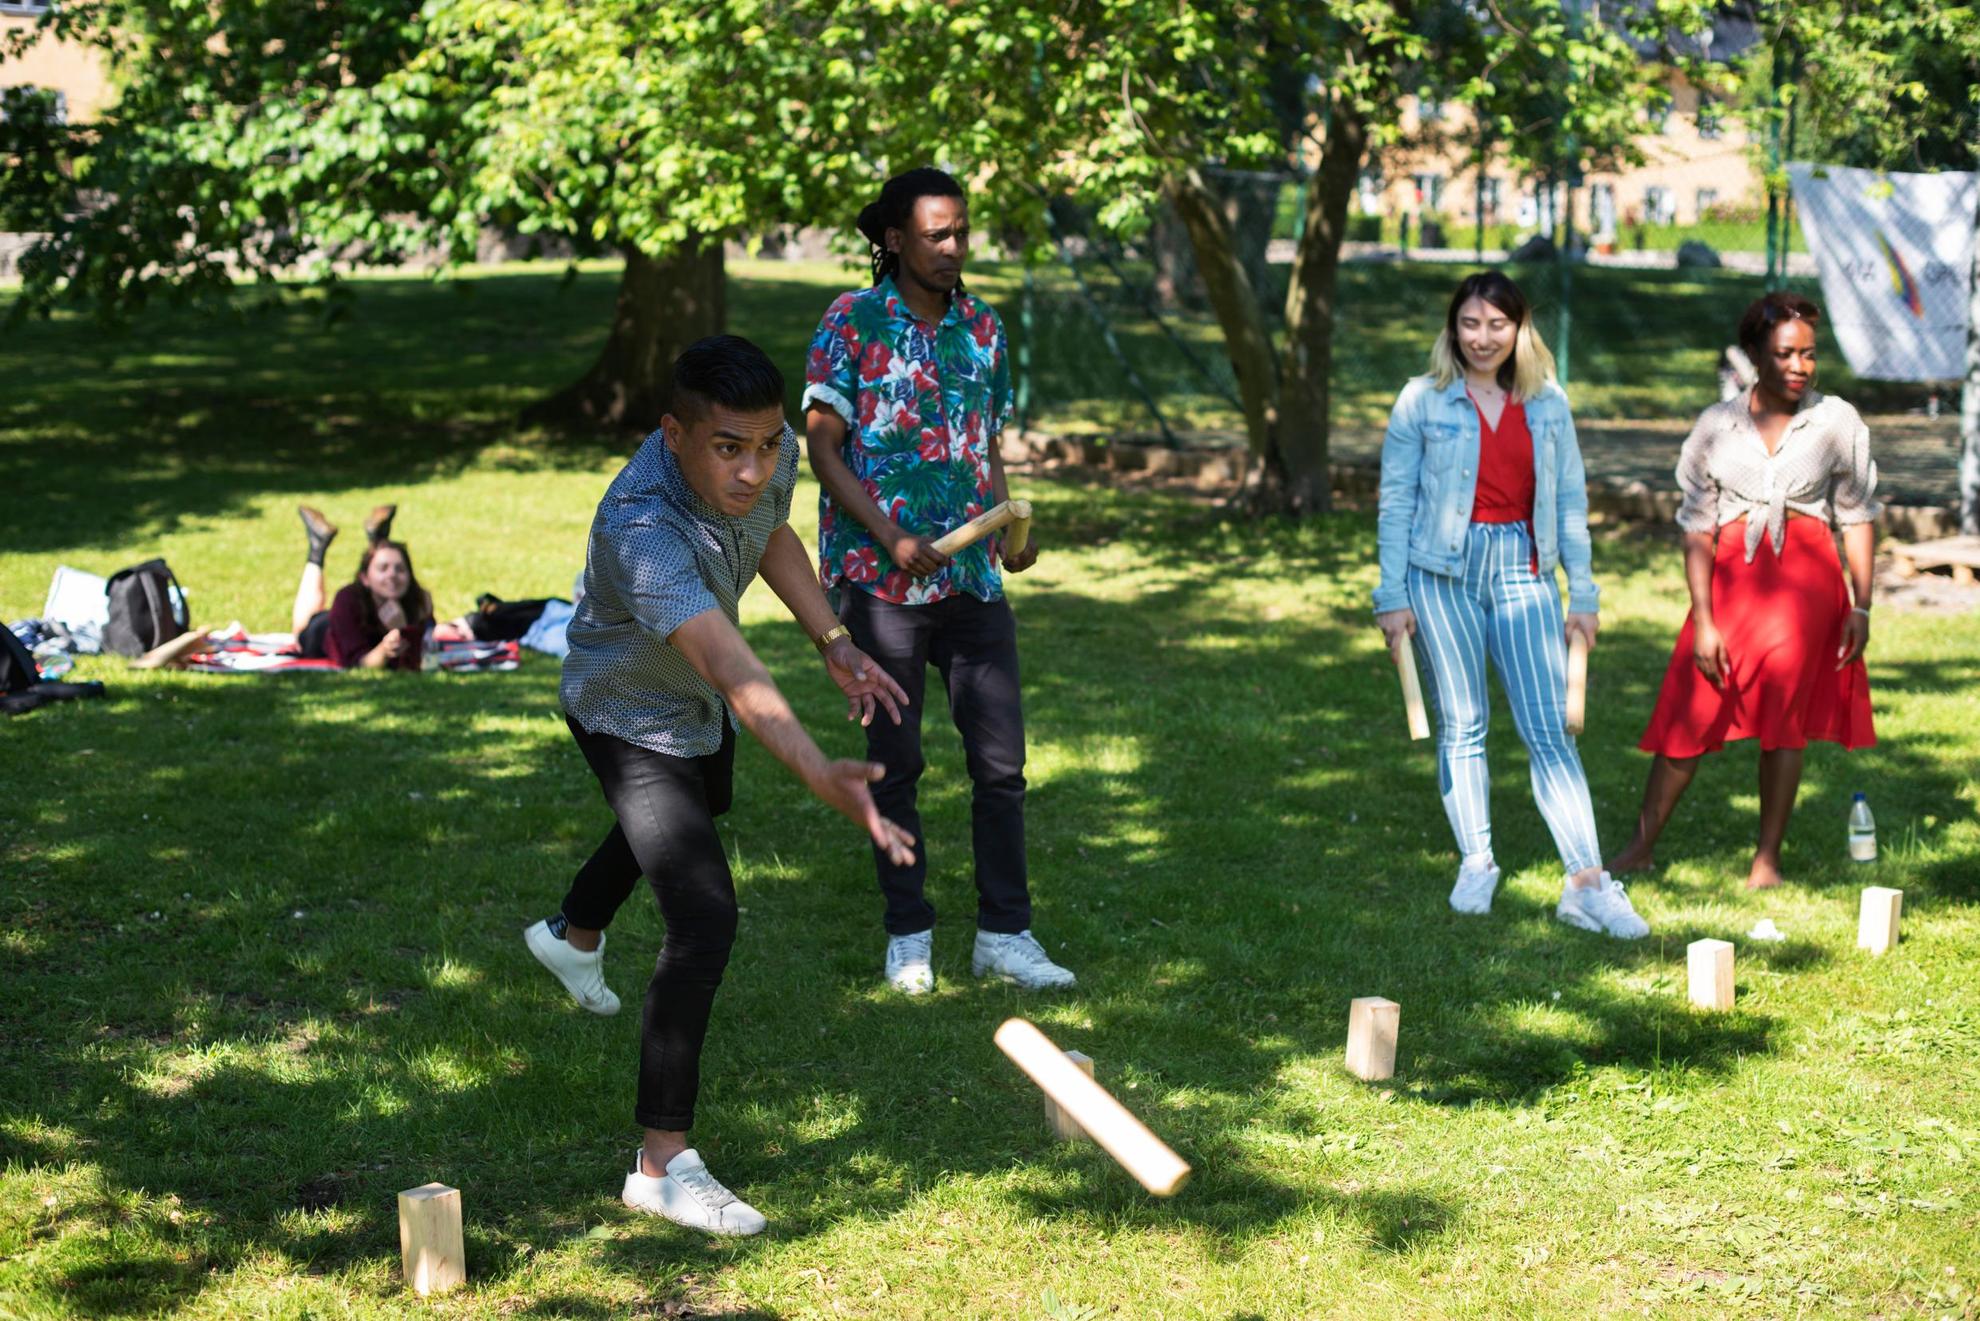 Des personnes sont dans un parc et lancent des bâtons en bois sur des blocs de bois posés dans l'herbe.